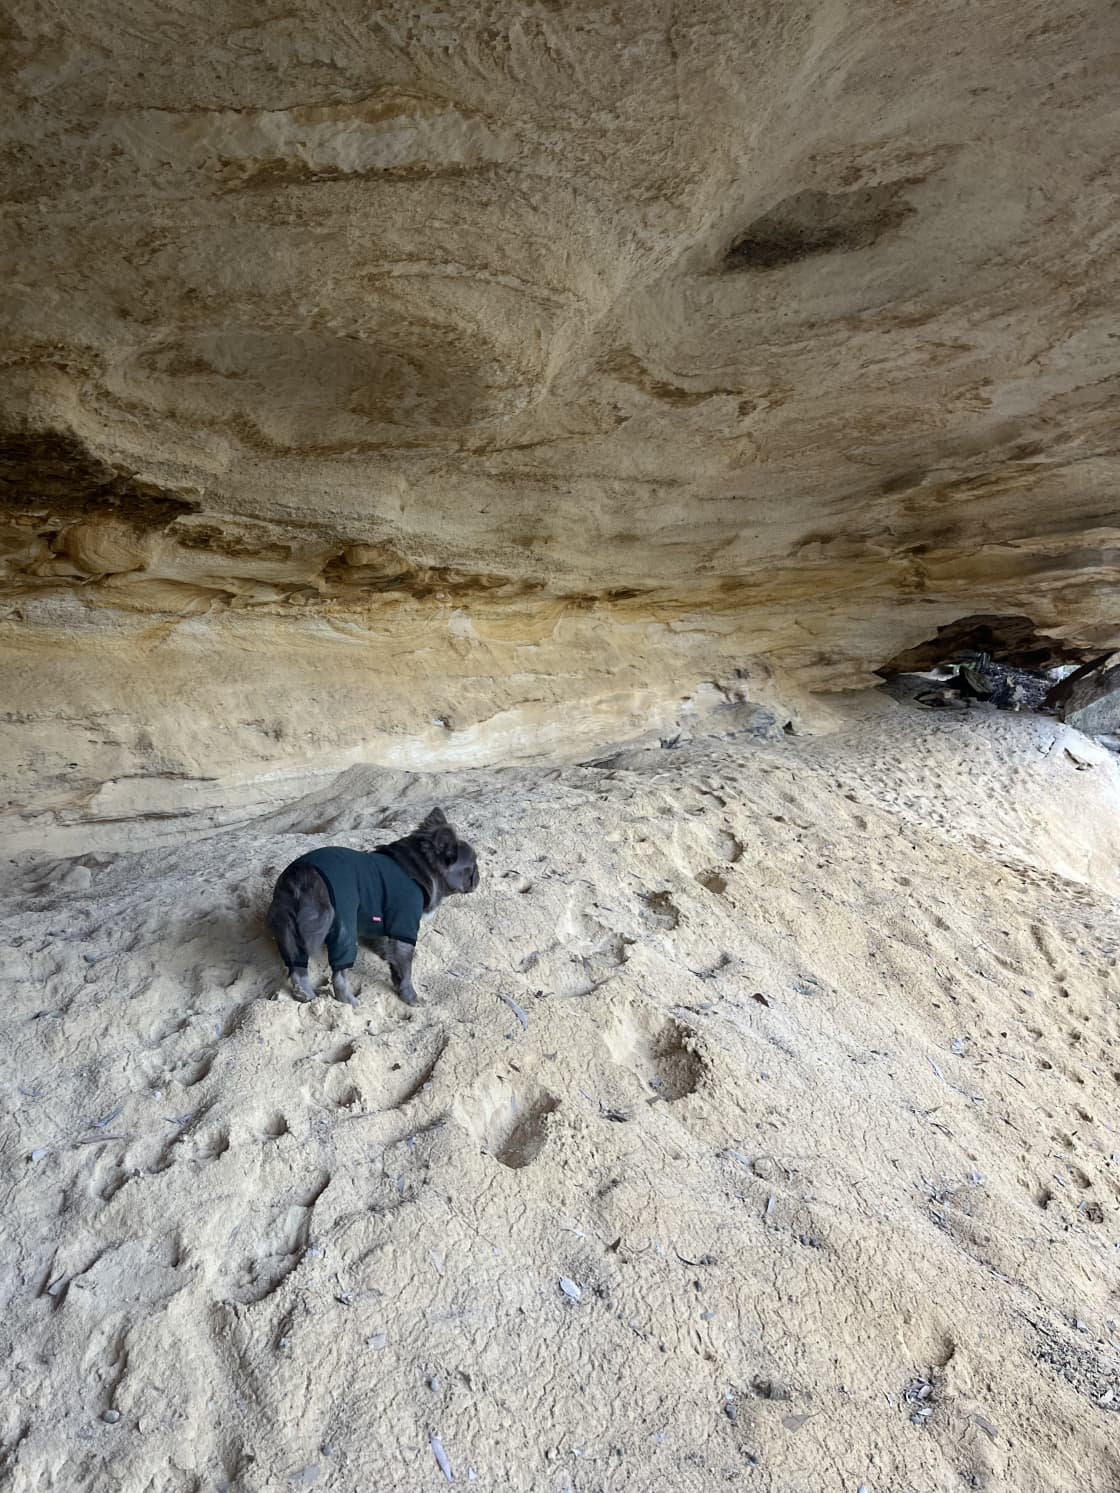 Boff enjoyed the caves